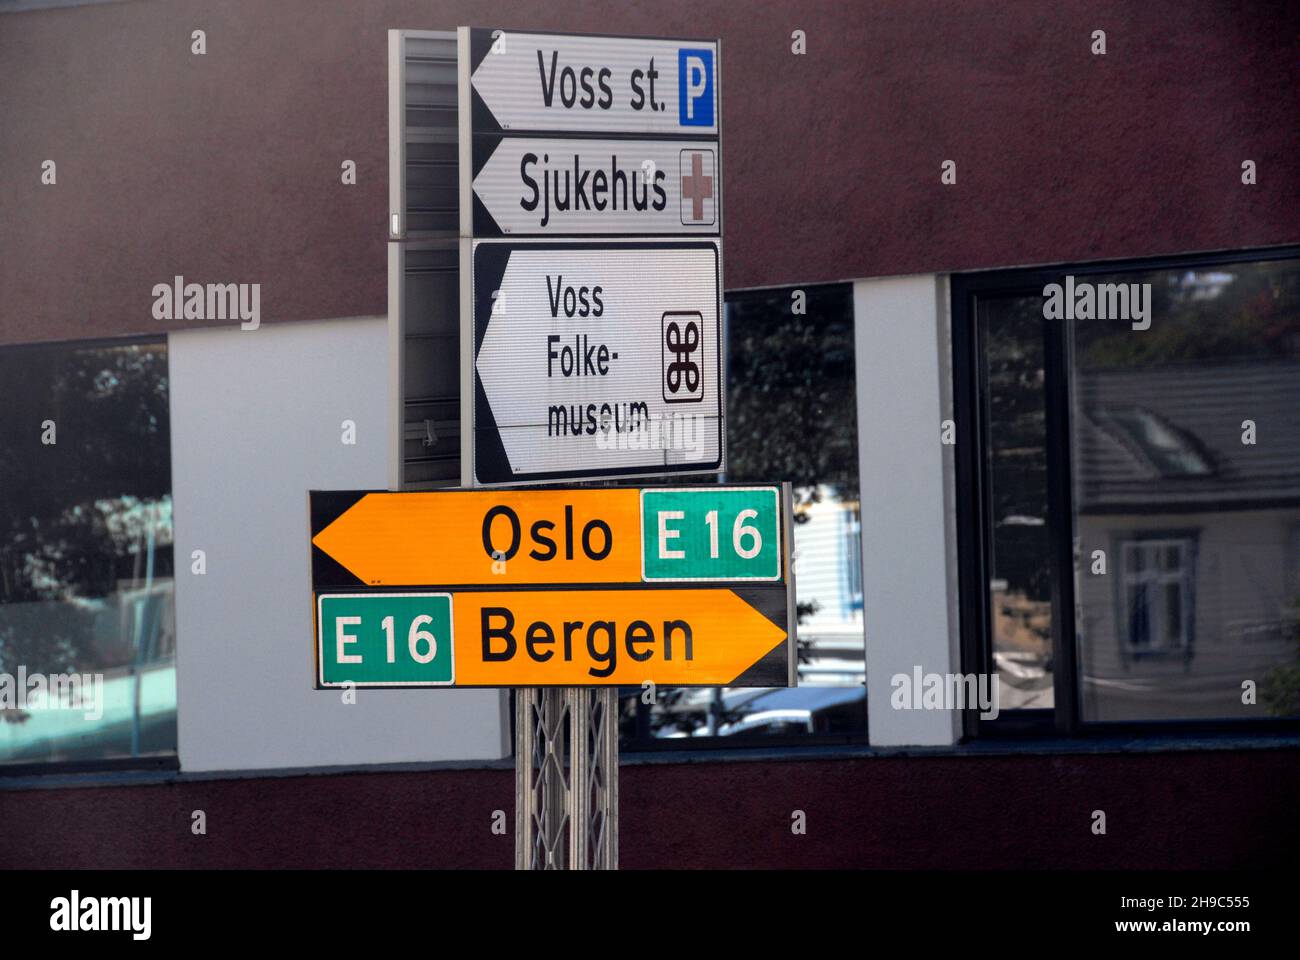 Segnaletica stradale, Voss, Norvegia con indicazioni per parcheggio, ospedale e museo e indicazioni per Oslo e Bergen sul E16 Foto Stock